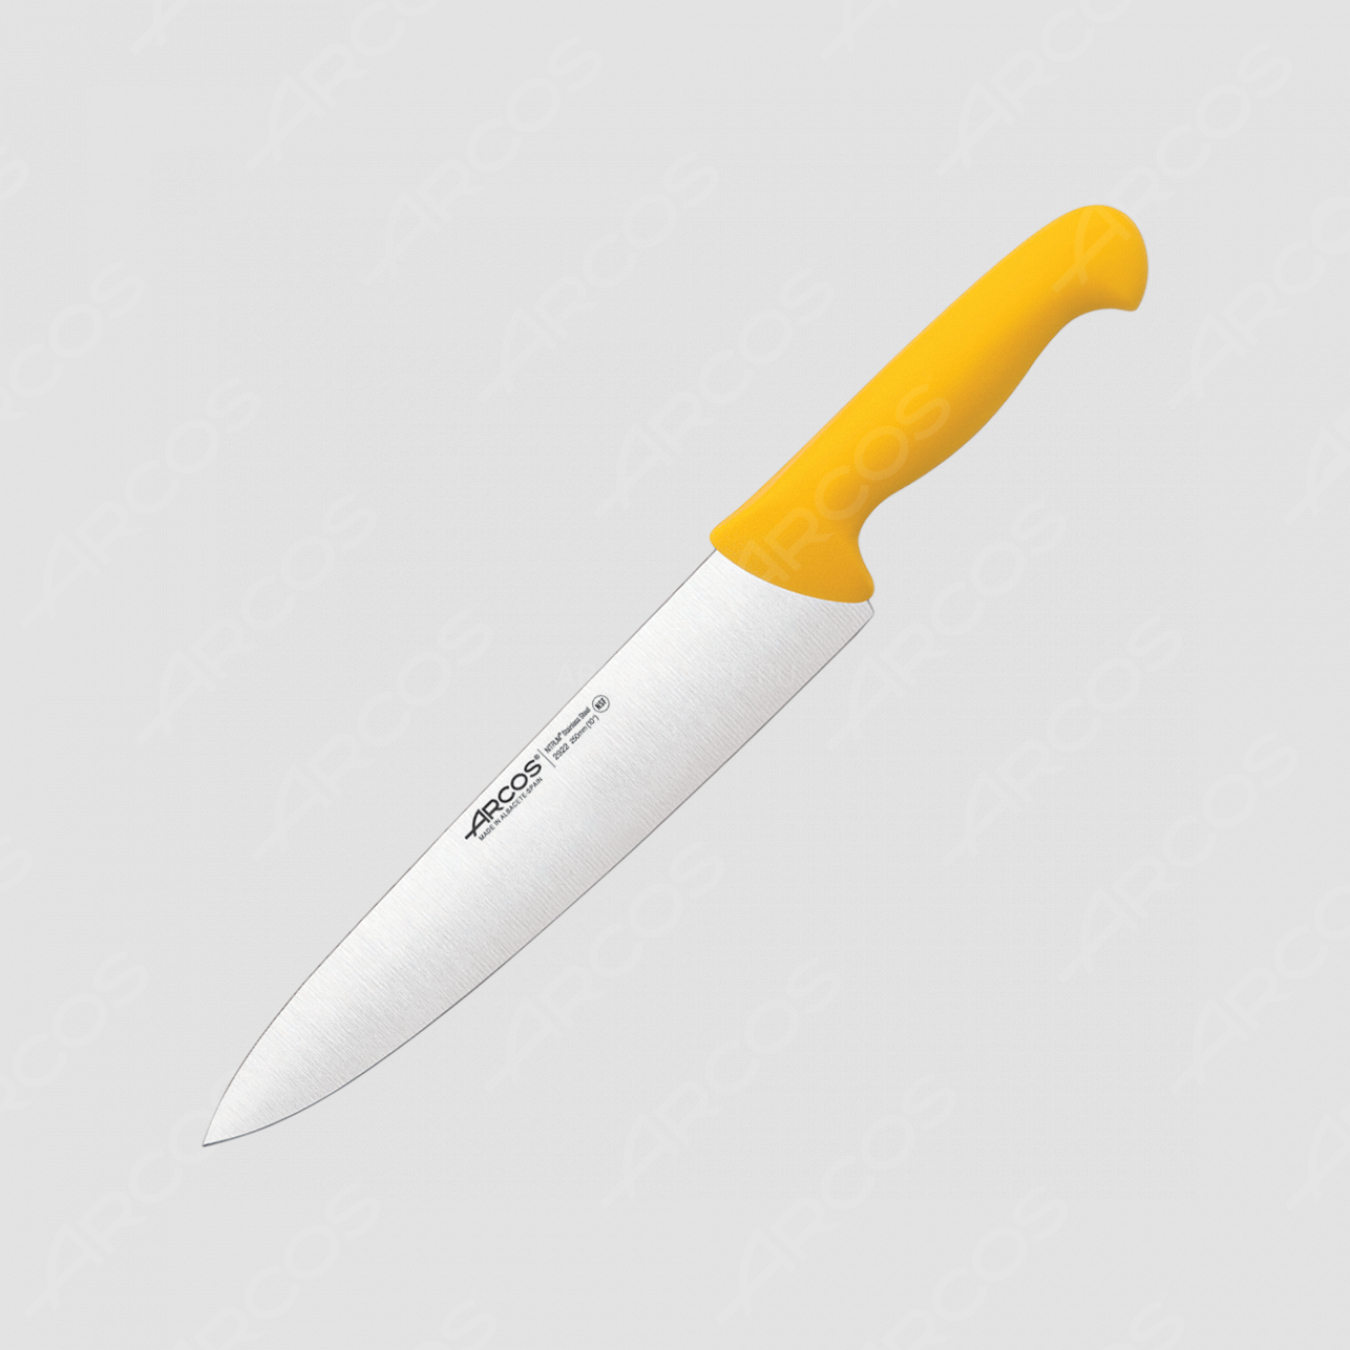 Профессиональный поварской кухонный нож 25 см, рукоять желтая, серия 2900, ARCOS, Испания